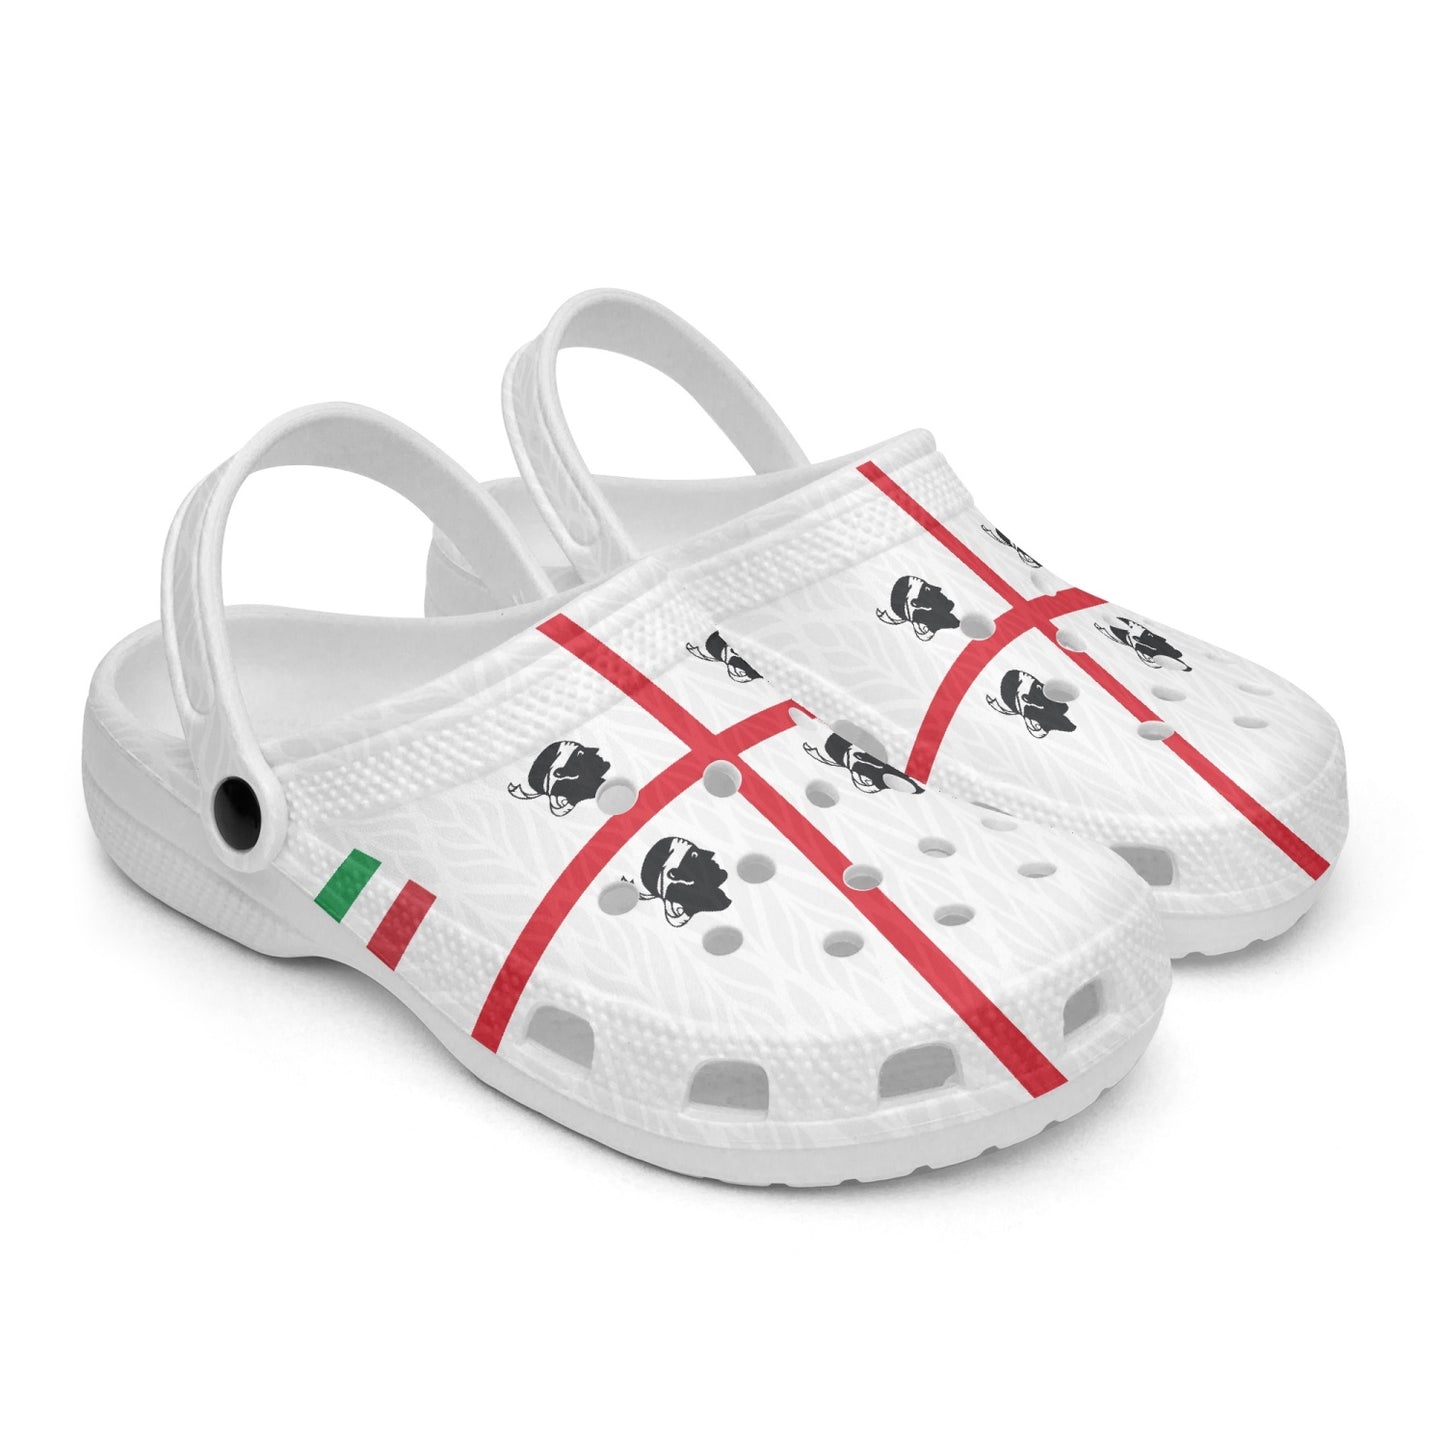 Sardegna Clogs shoes